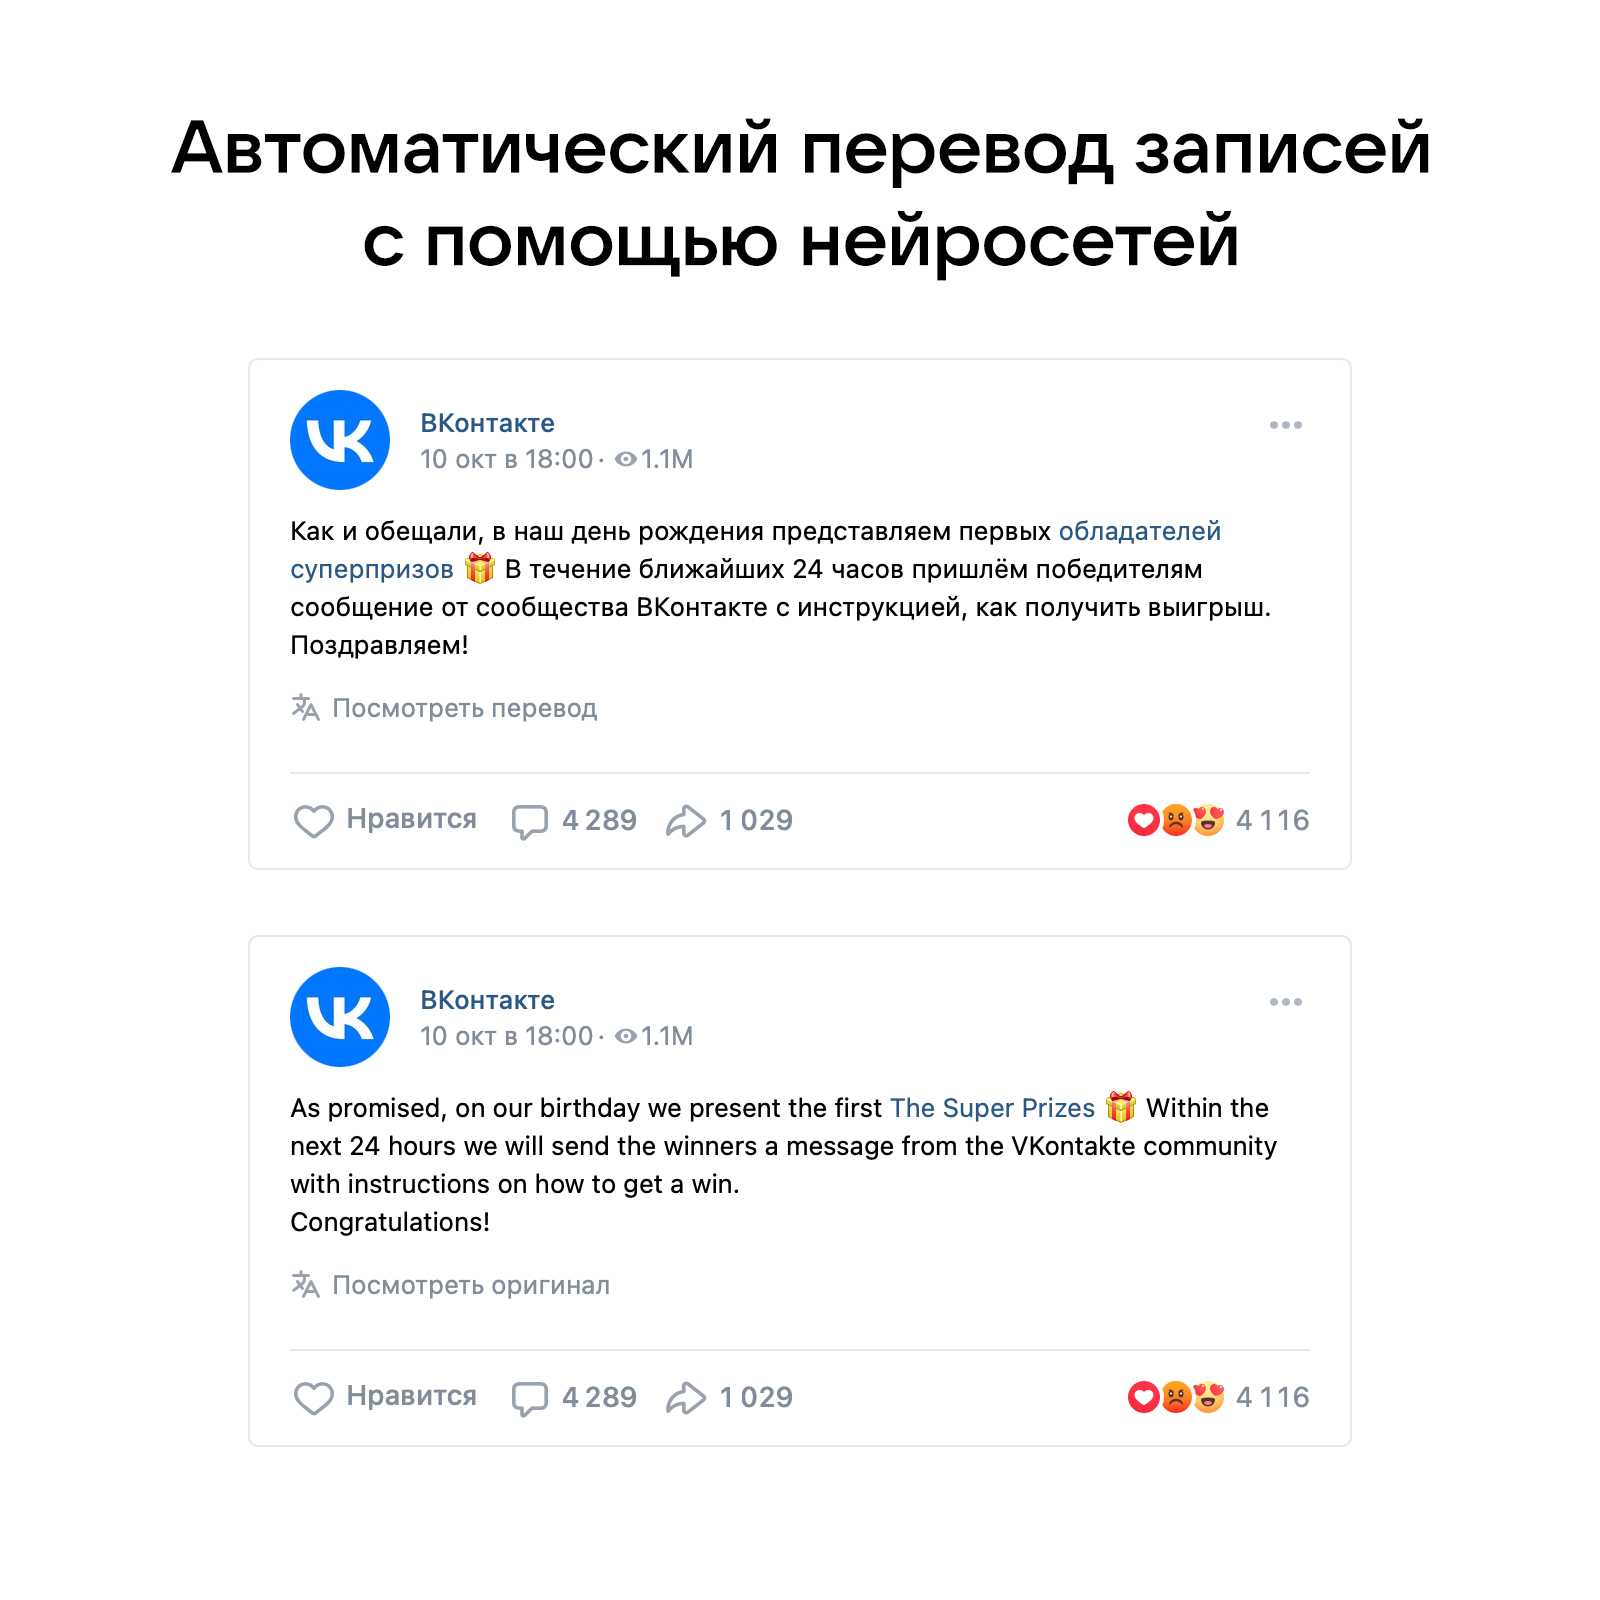 ВКонтакте запустила автоматический перевод публикаций с помощью нейросетей (VK Translate)